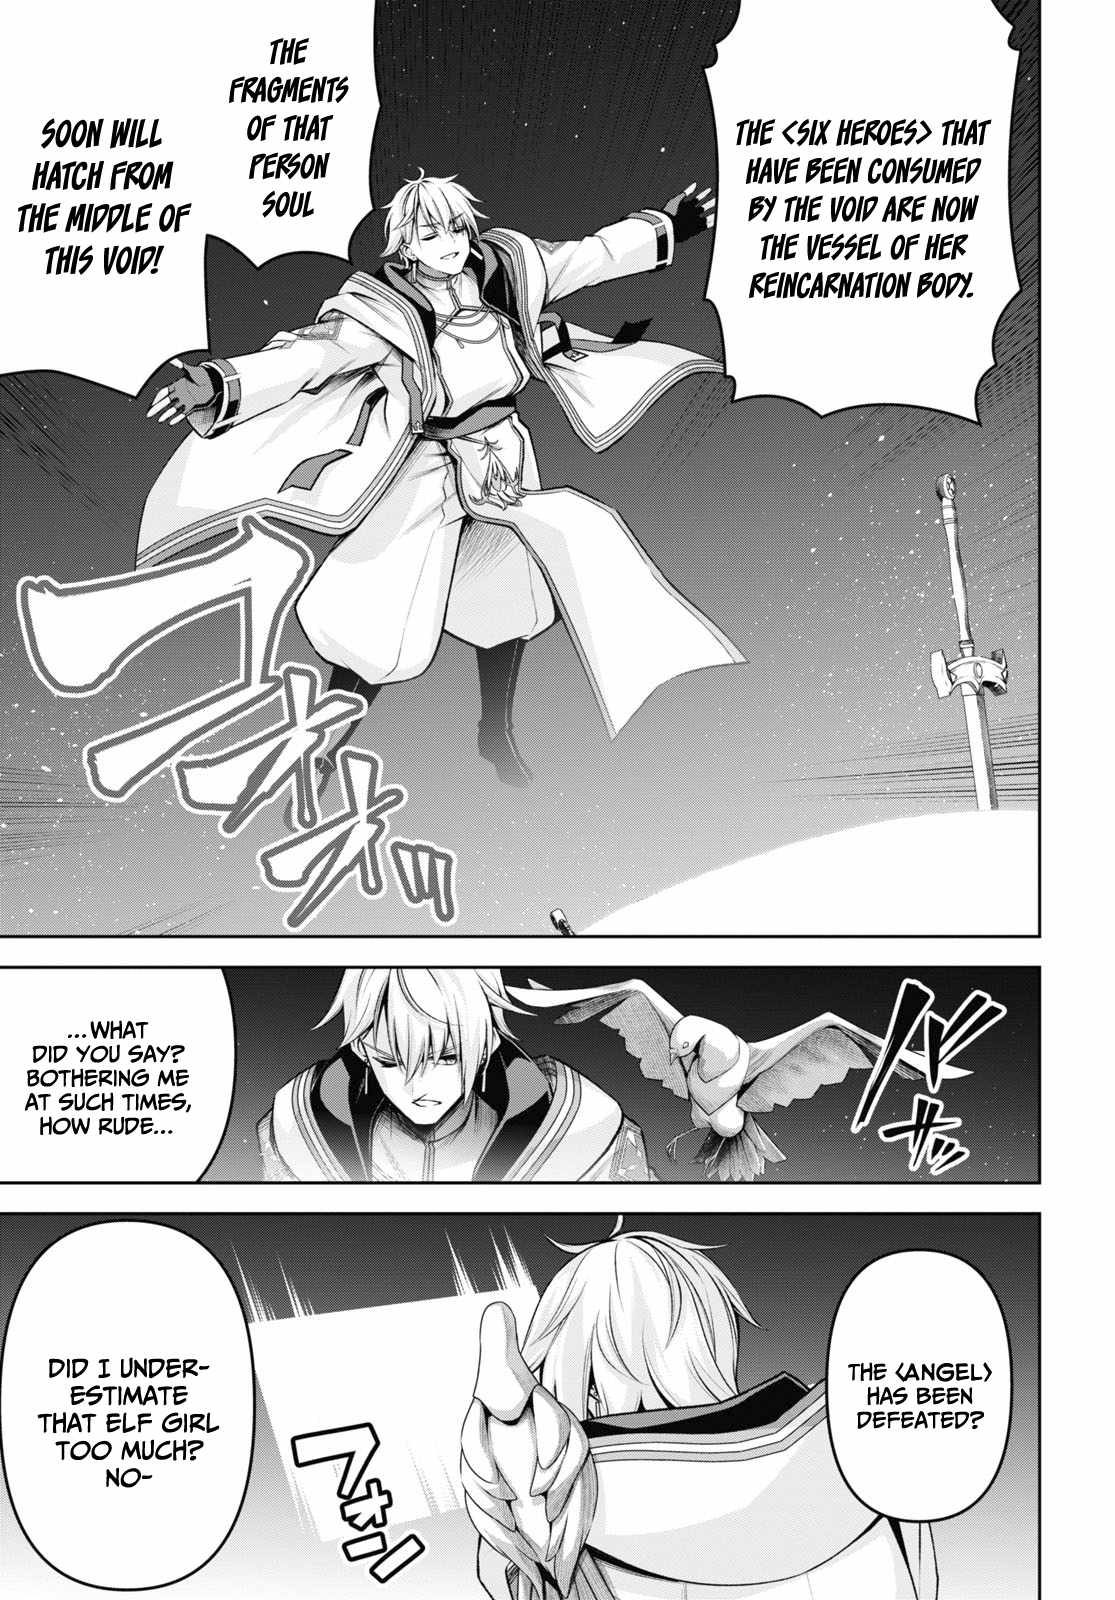 Demon's Sword Master Of Excalibur School - 26 page 24-8832d402